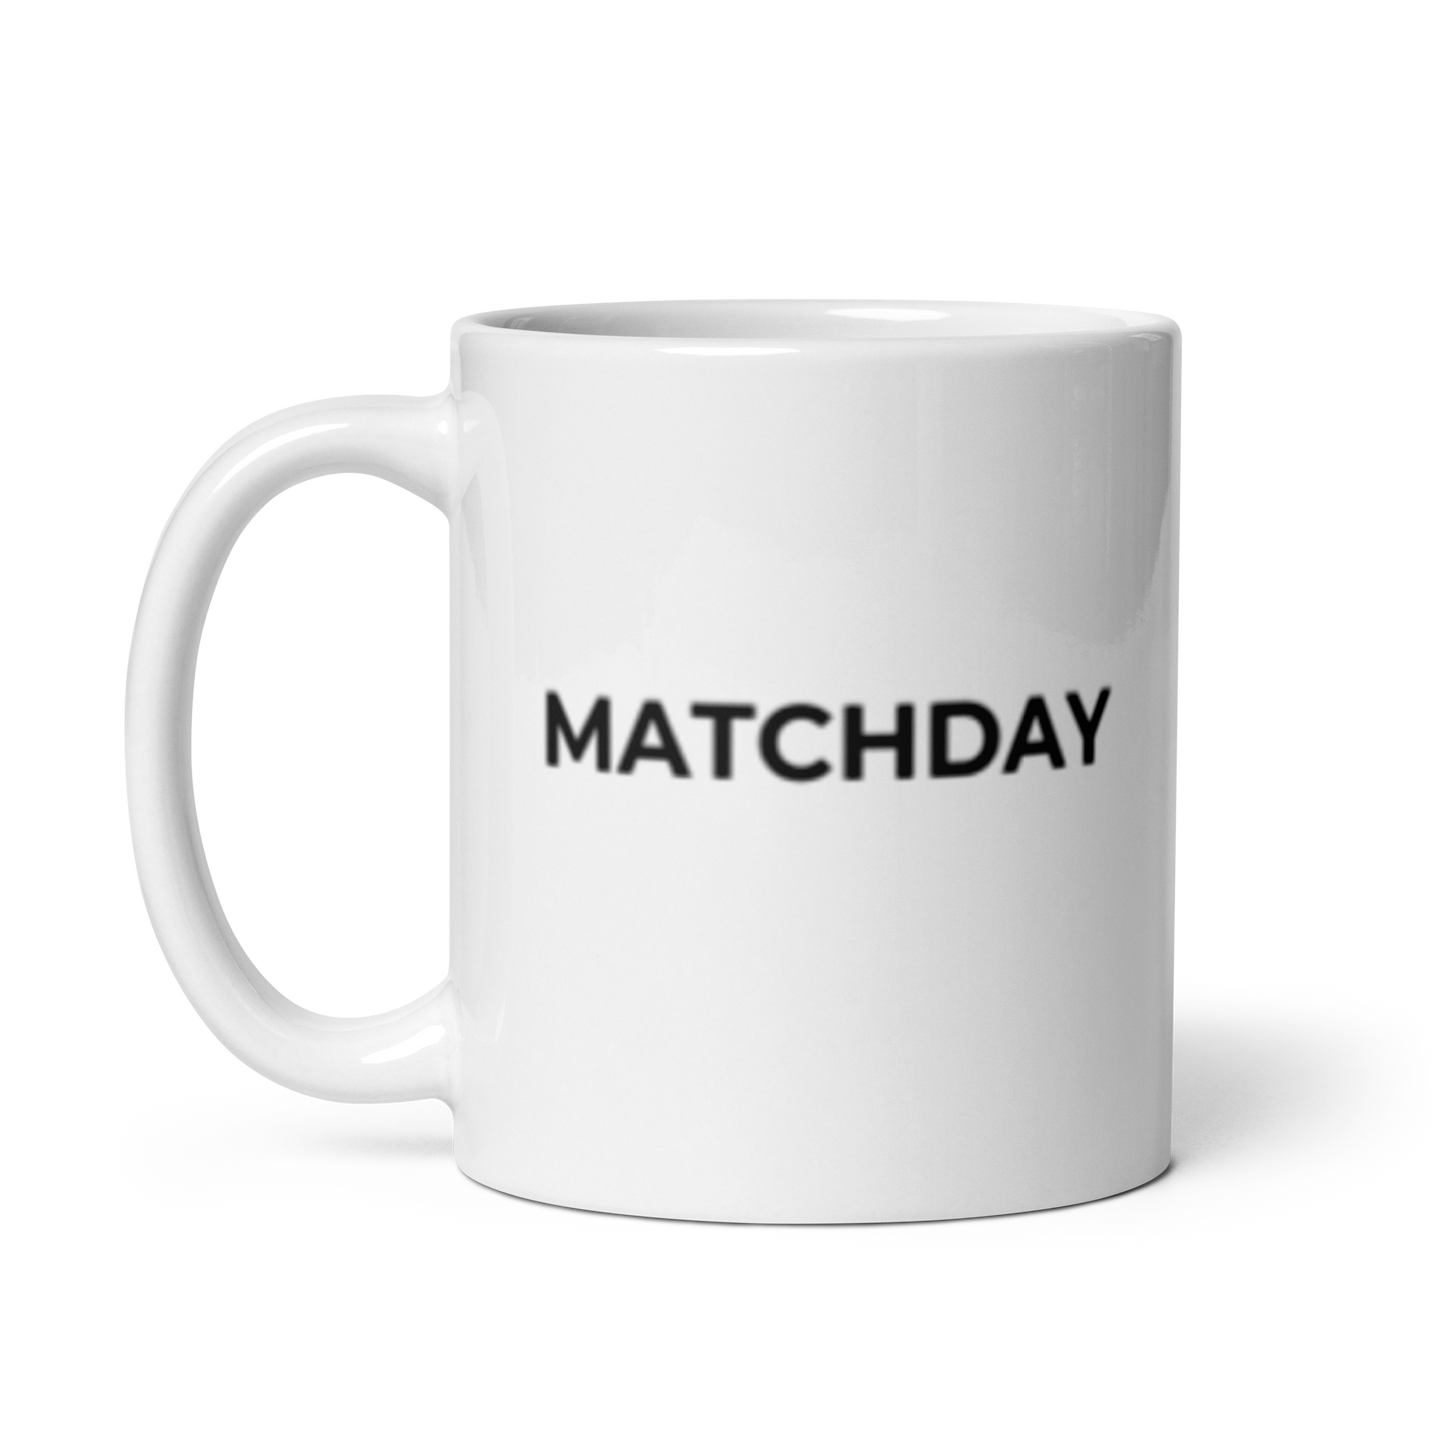 White MATCHDAY mug